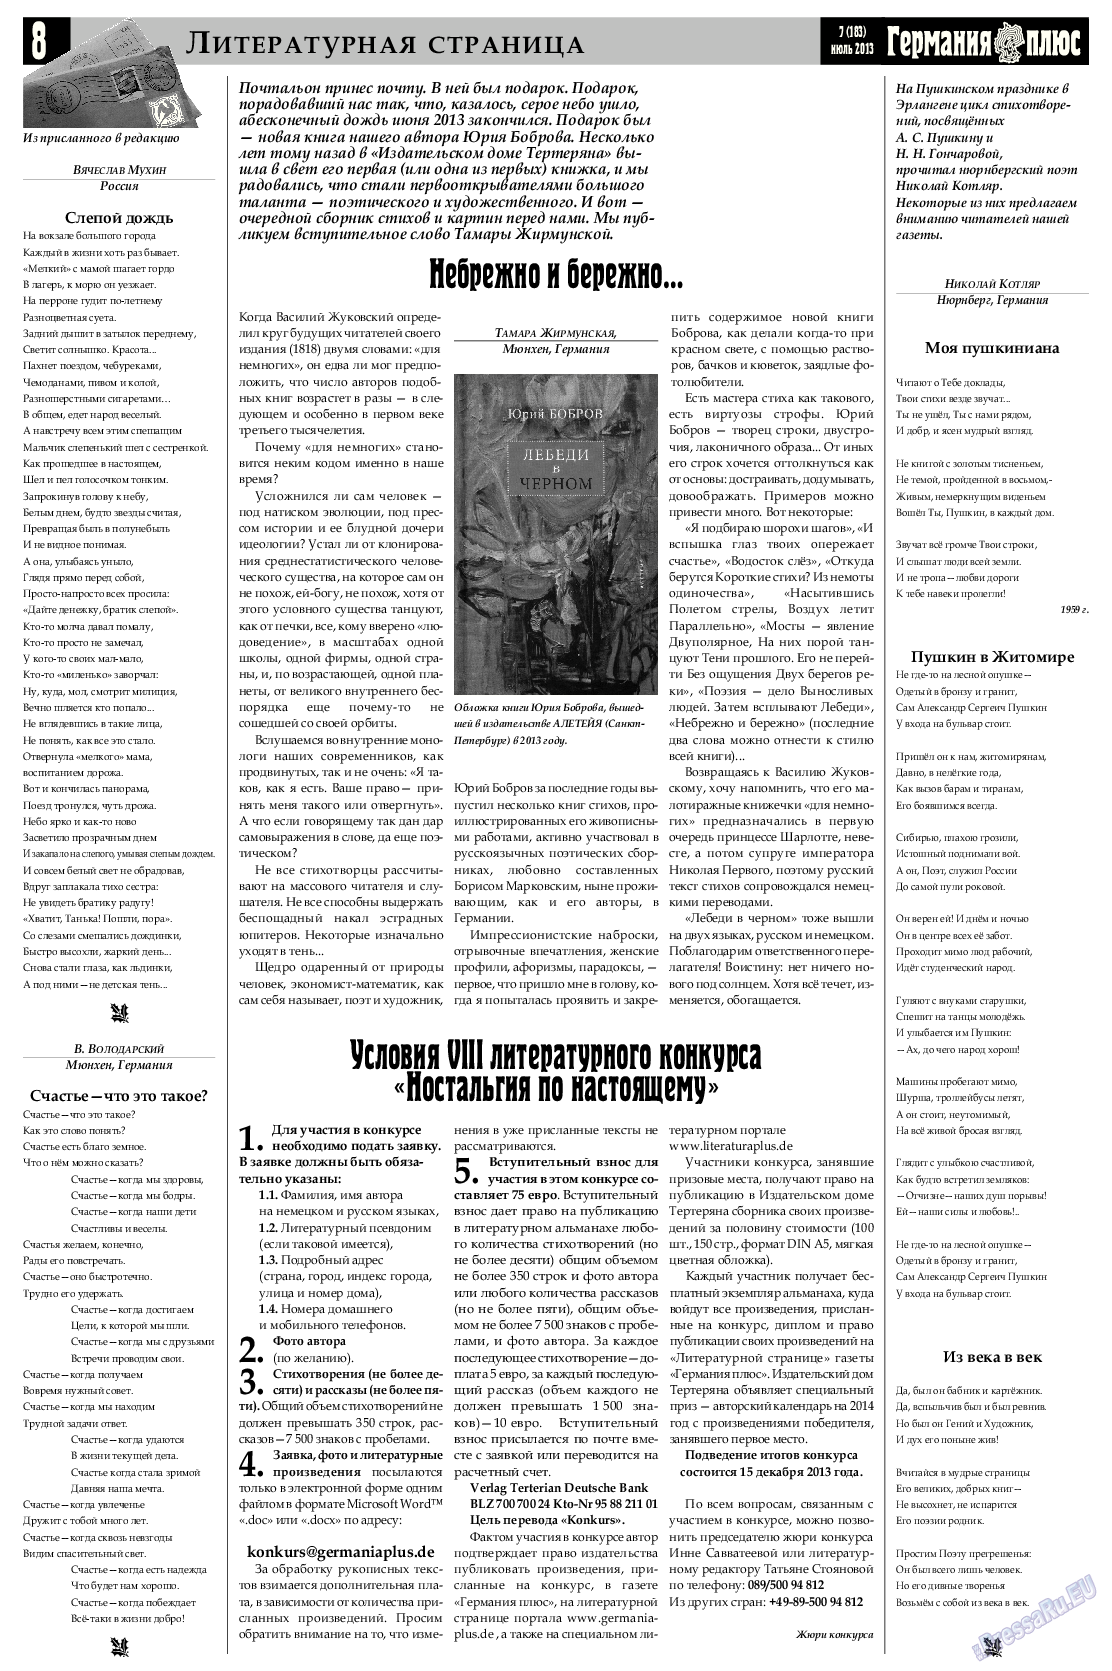 Германия плюс, газета. 2013 №7 стр.8